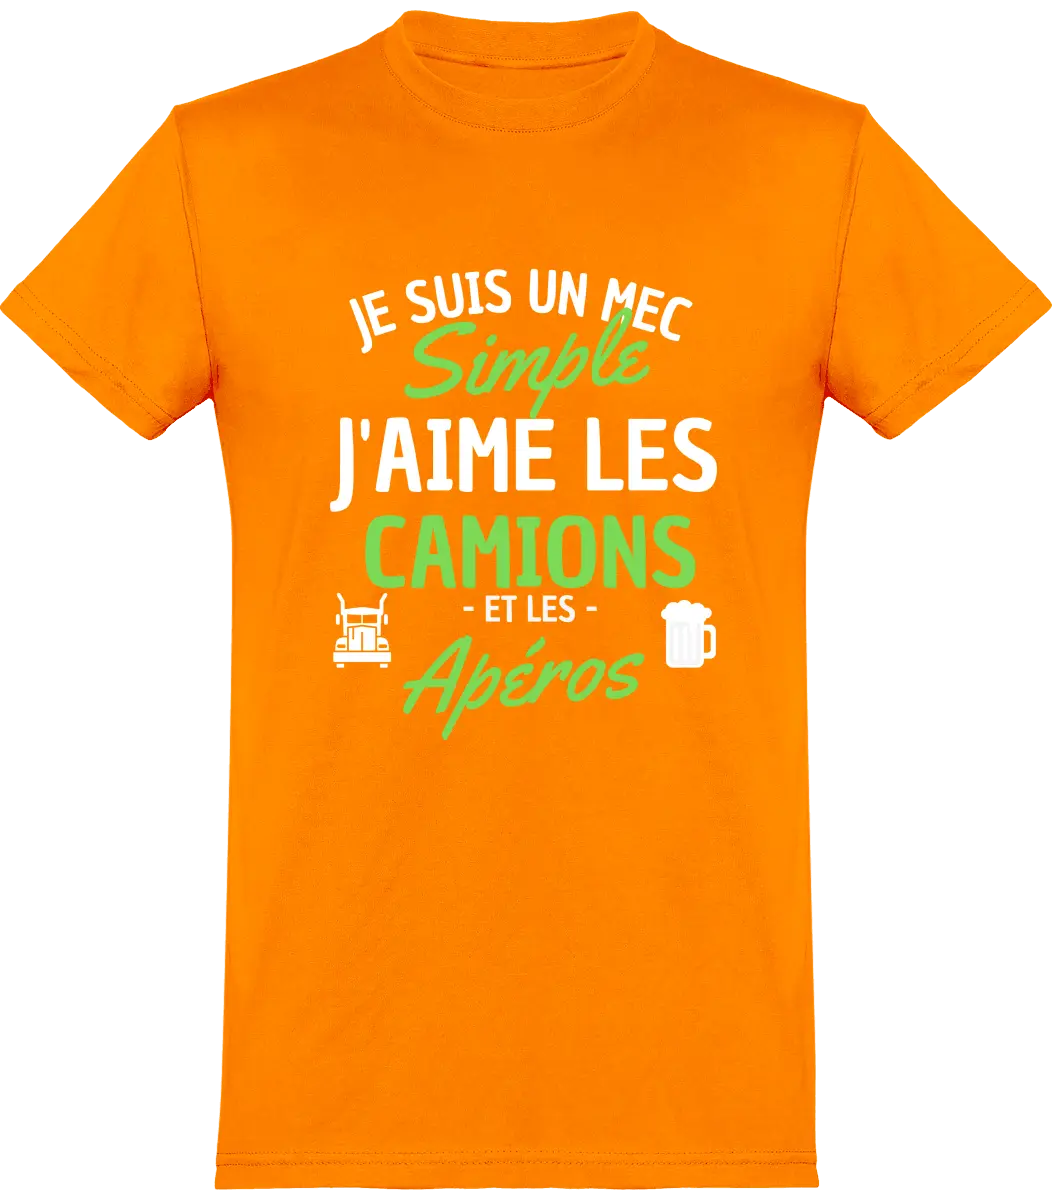 T-shirt Routier "Je suis un mec simple j'aime les camions et les apéros" | Mixte - French Humour